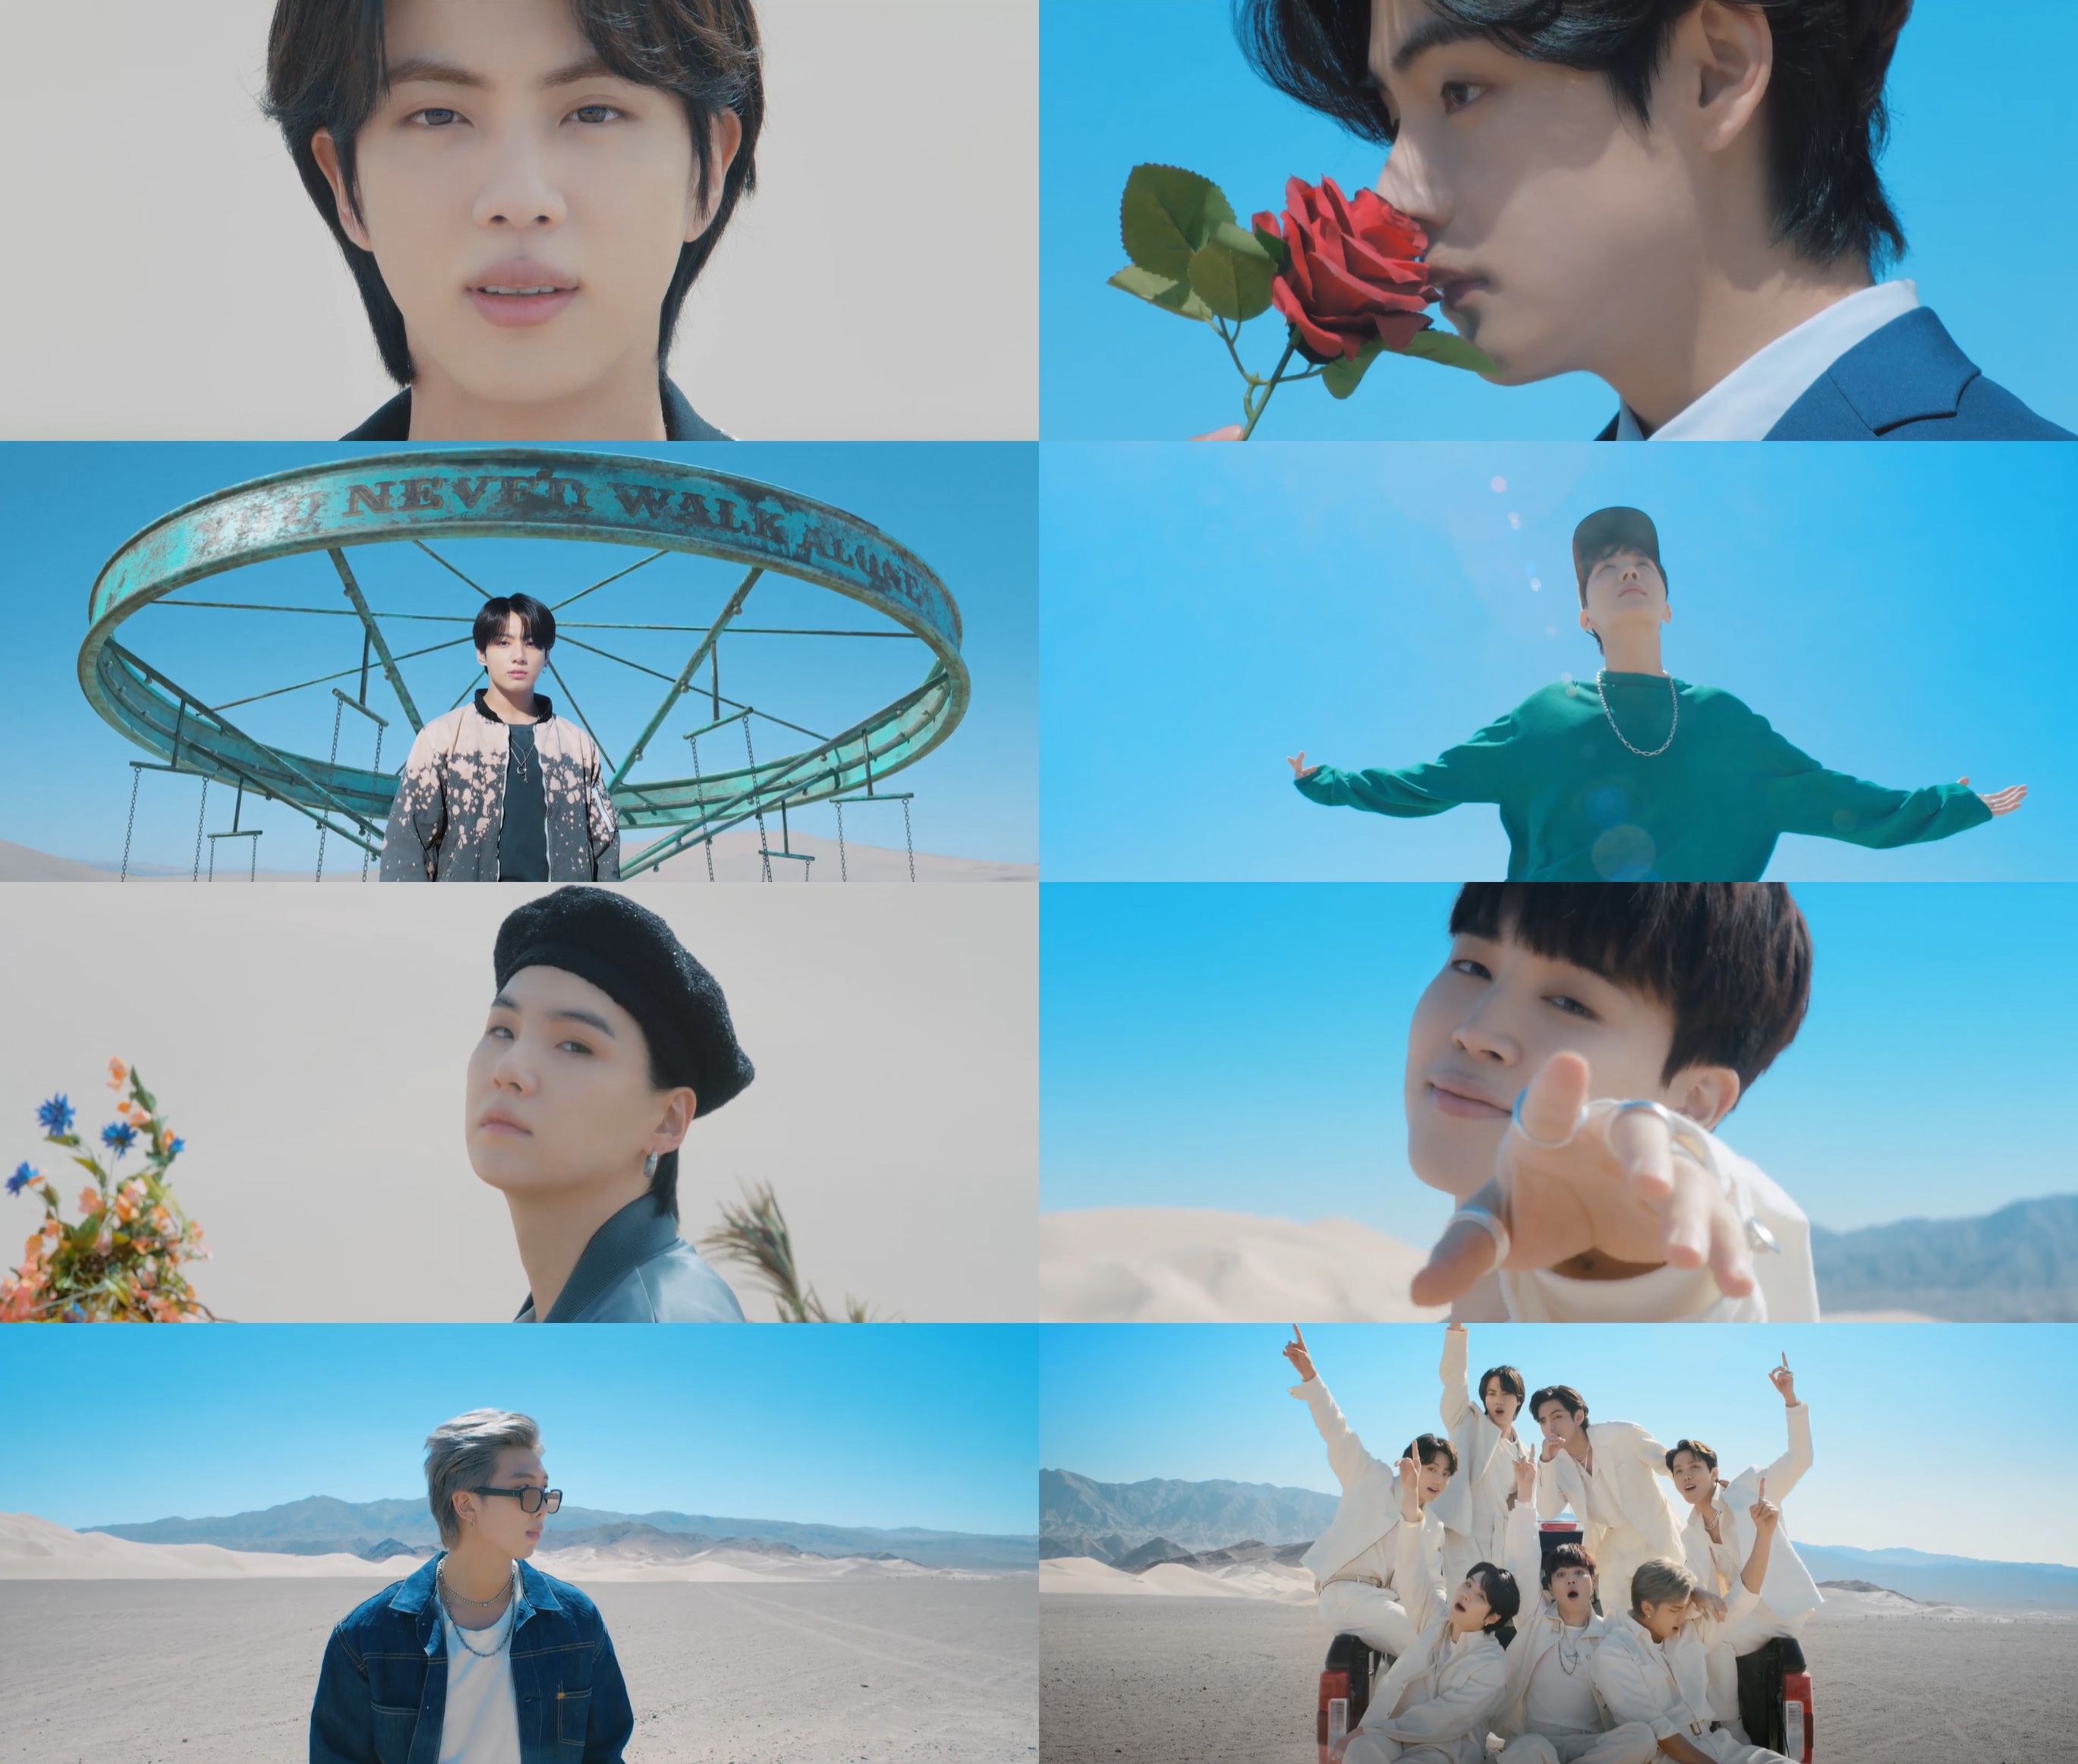 그룹 방탄소년단(BTS)의 새 앨범 ‘프루프’에 포함된 신곡 ‘옛 투 컴’ 뮤직비디오 스틸. 빅히트뮤직 제공